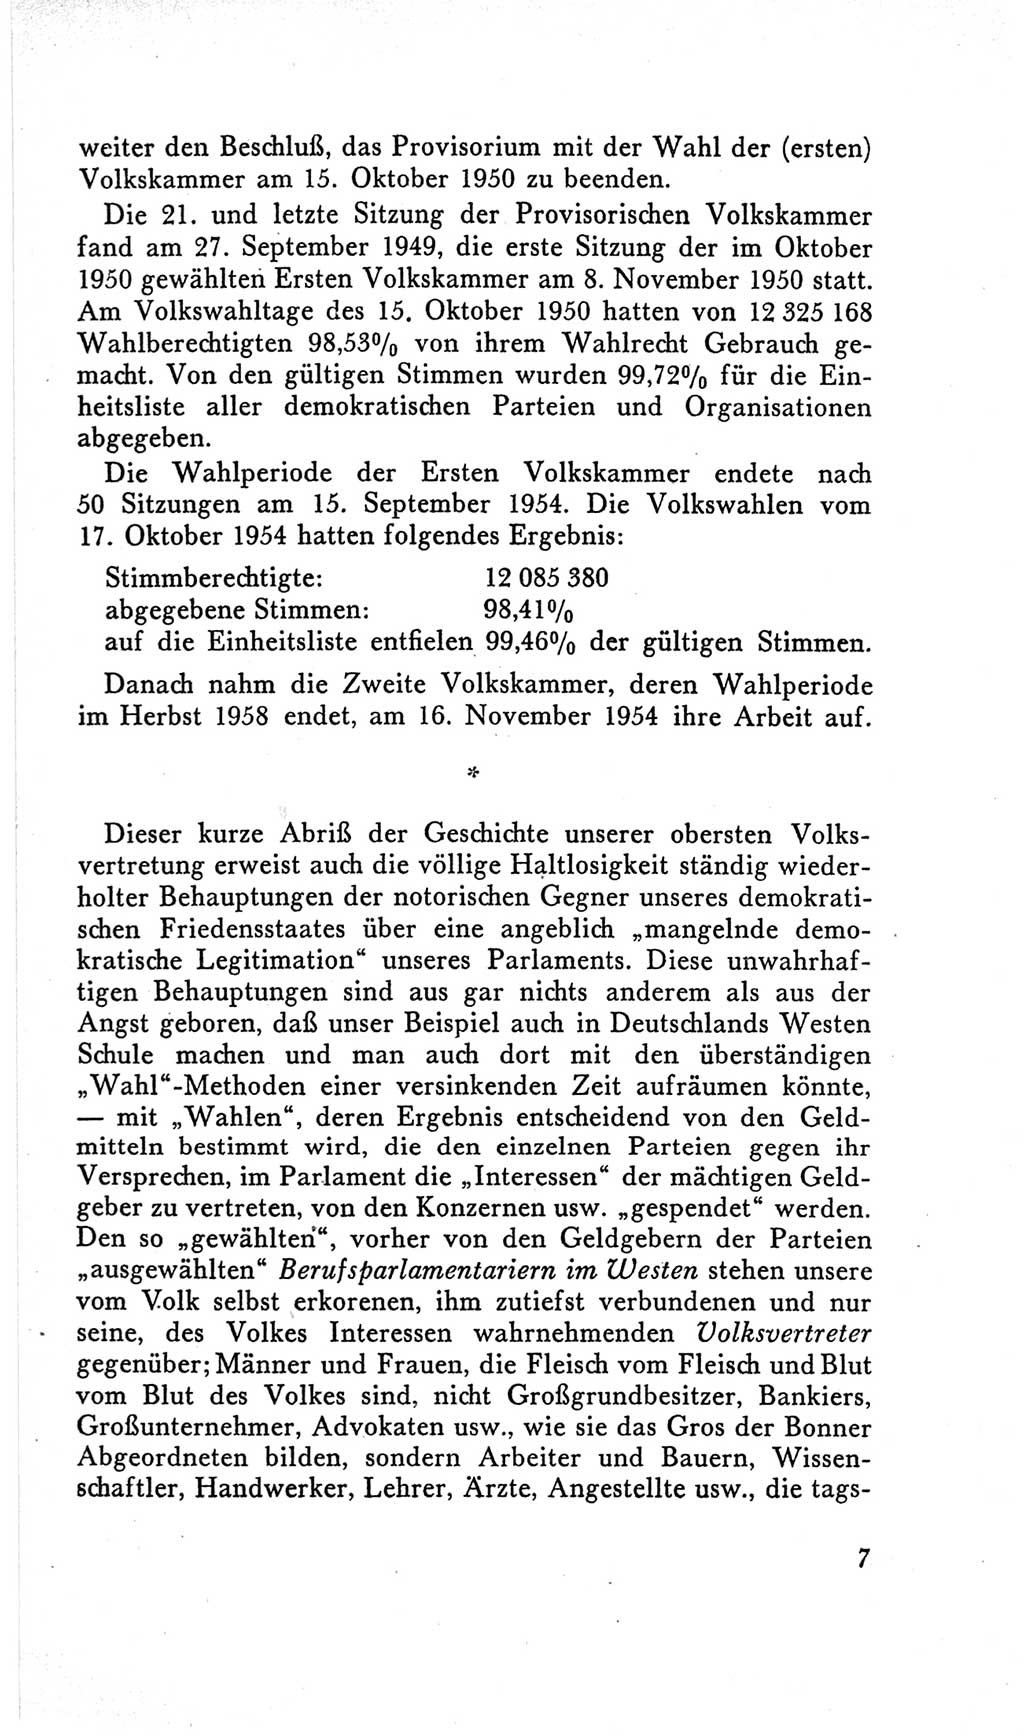 Handbuch der Volkskammer (VK) der Deutschen Demokratischen Republik (DDR), 2. Wahlperiode 1954-1958, Seite 7 (Hdb. VK. DDR, 2. WP. 1954-1958, S. 7)